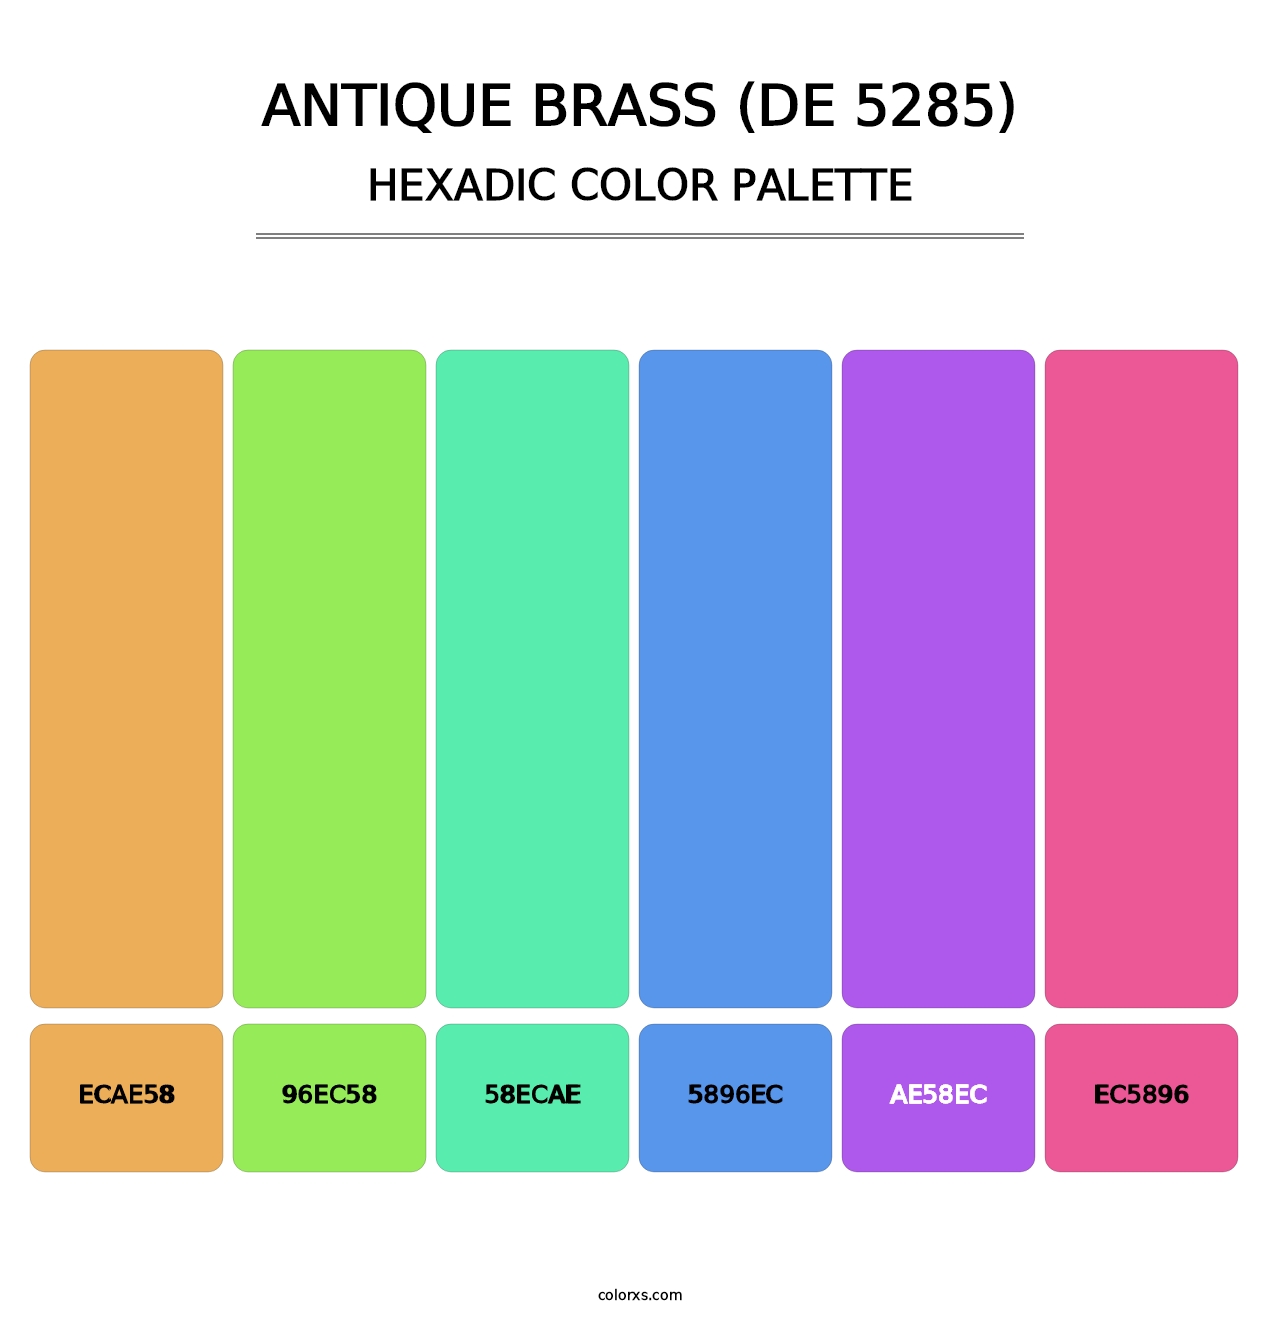 Antique Brass (DE 5285) - Hexadic Color Palette